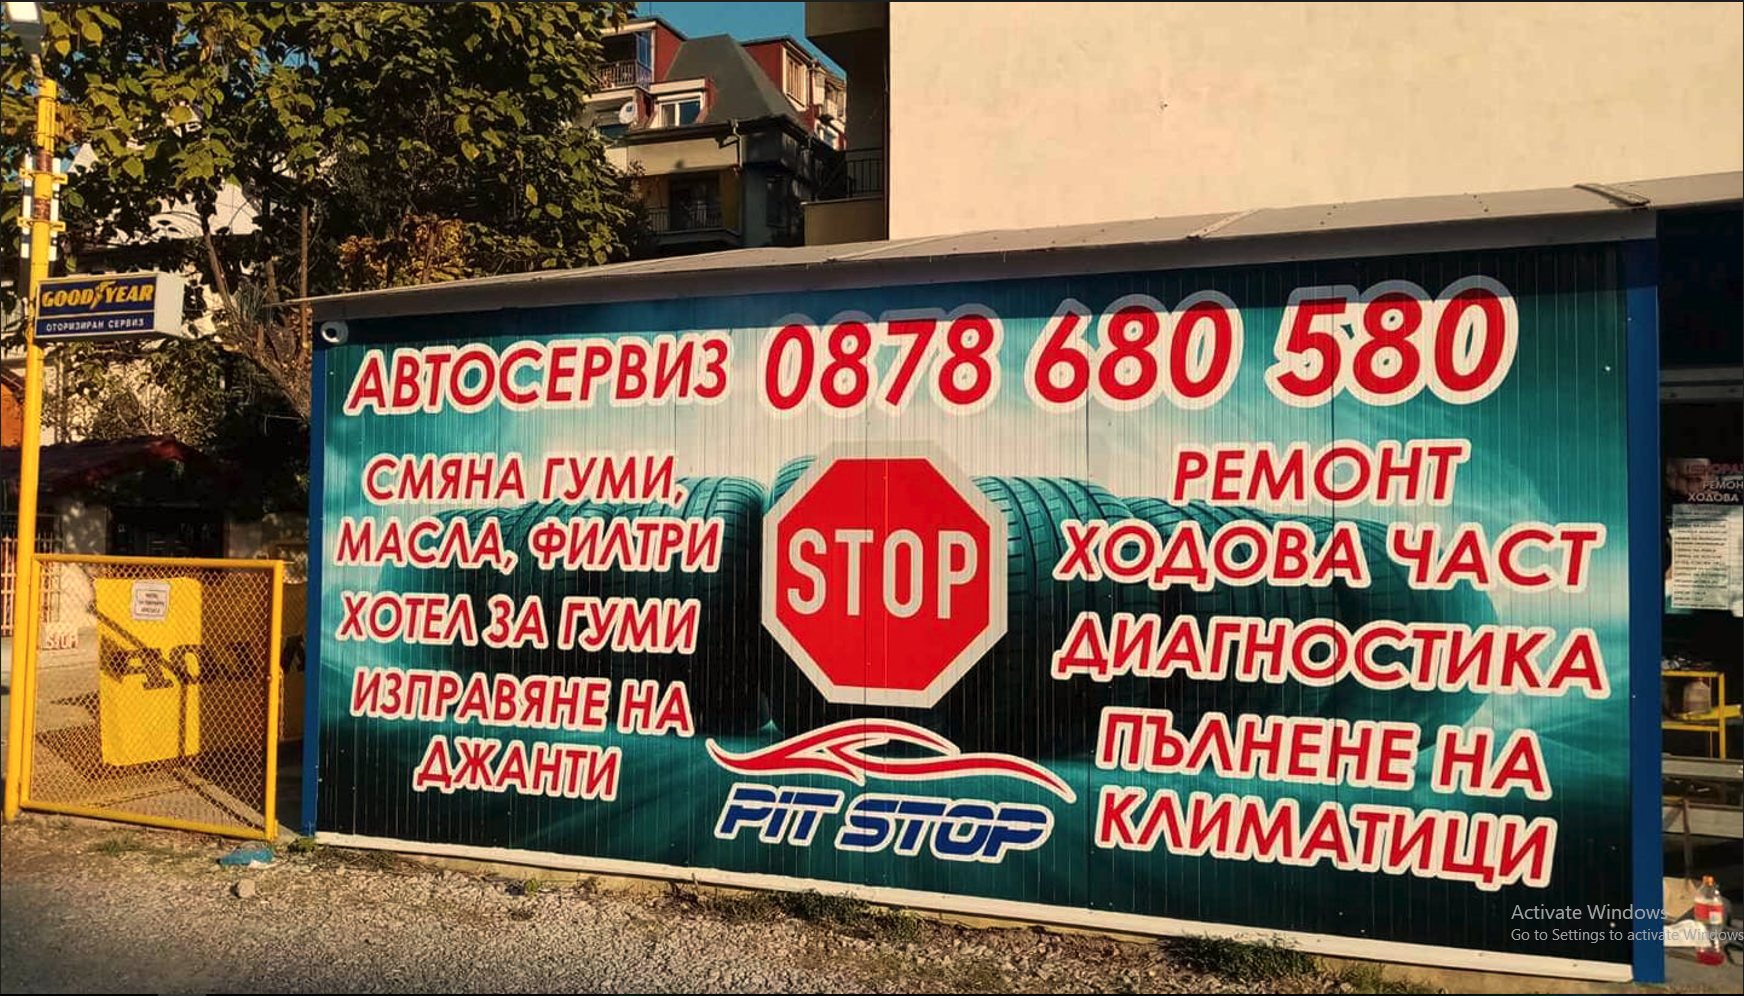 Автосервиз - Гумаджийница - Комплекс PIT STOP 23534